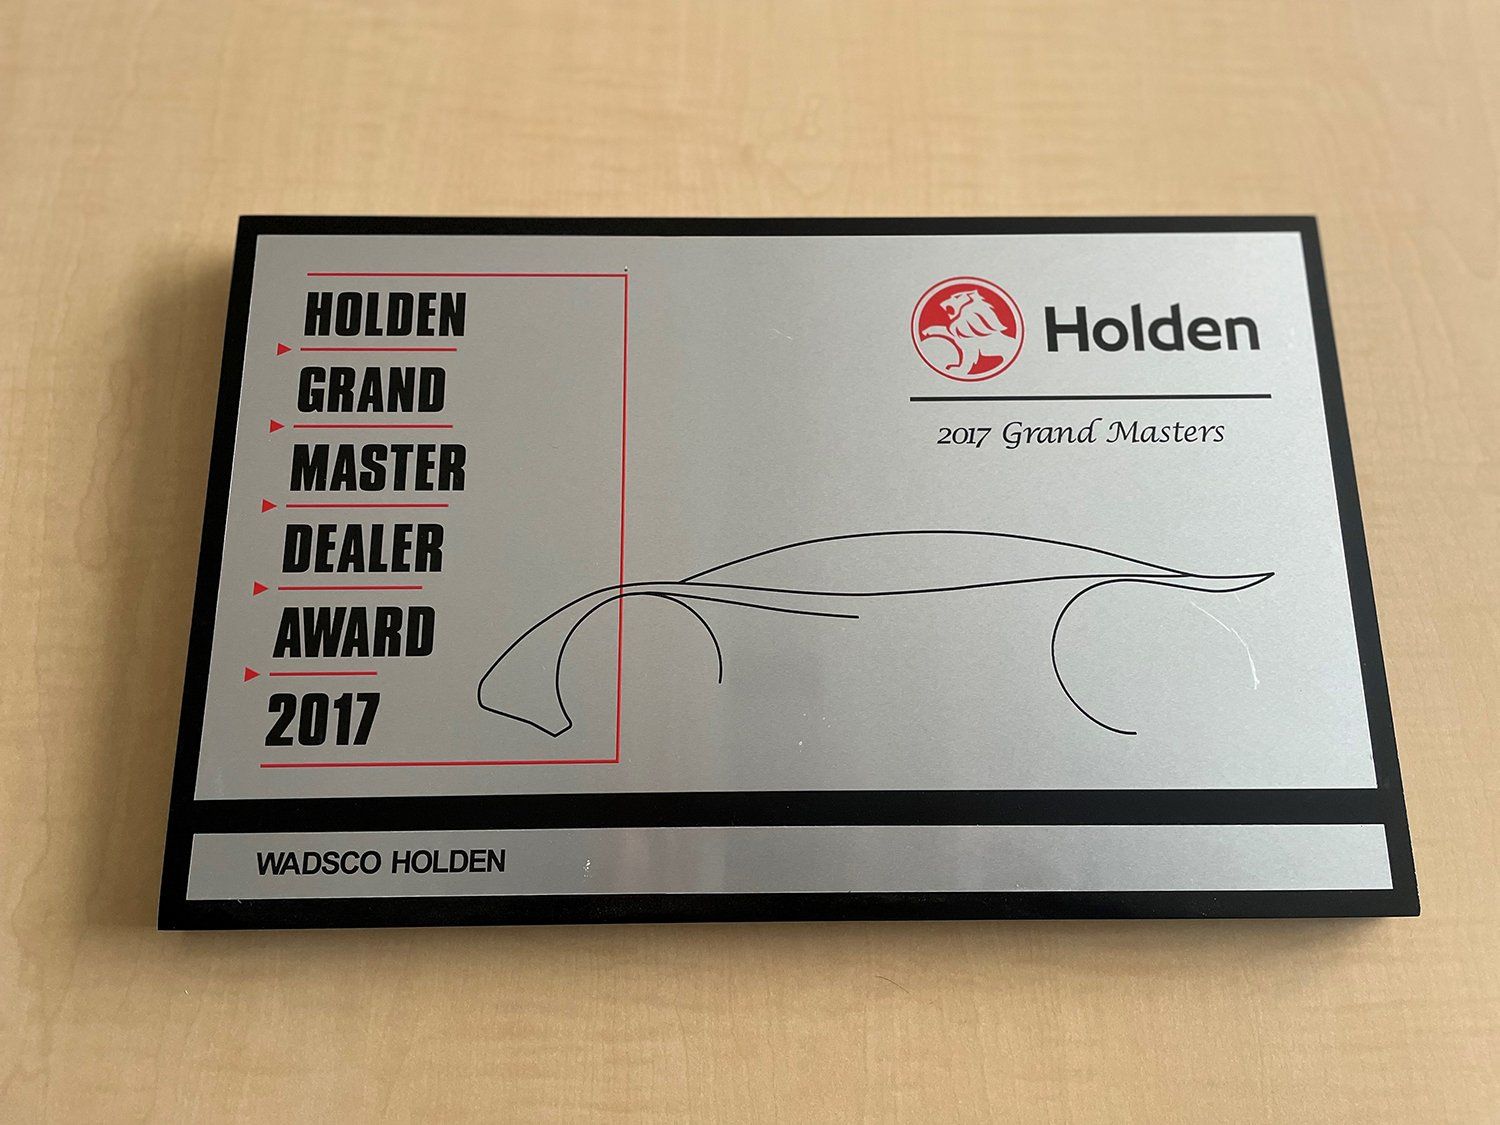 Wadsco Holden wins the 2017 Holden Grand Master Dealer Award